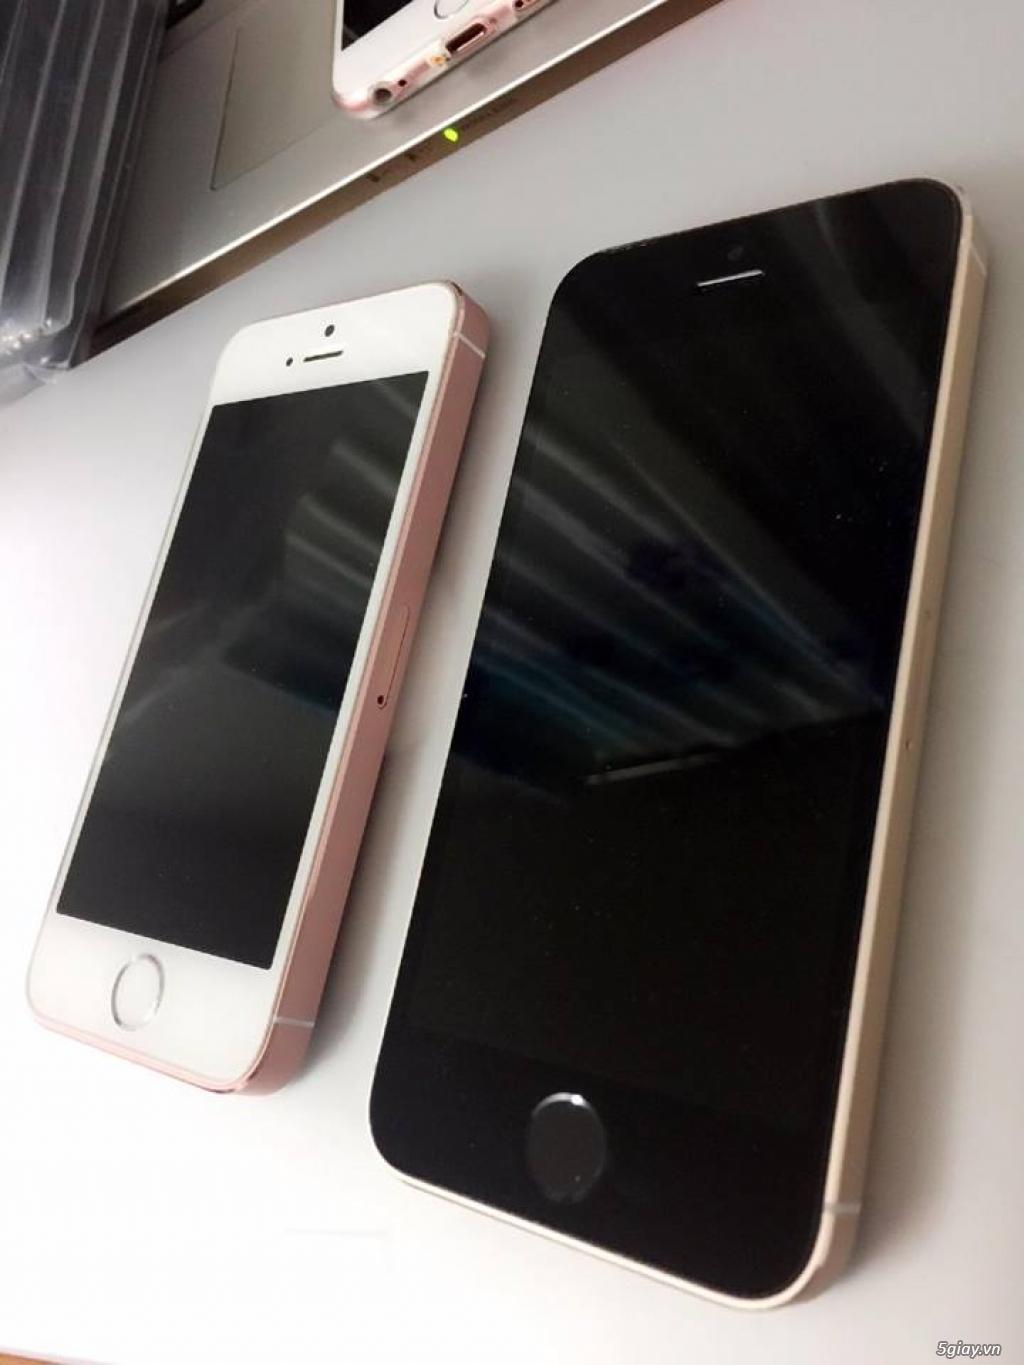 IPHONE 5S-16G-QUỐC TẾ-Lên Vỏ iPhone 5SE Hồng/Vàng Gold. Vân tay nhạy! - 19